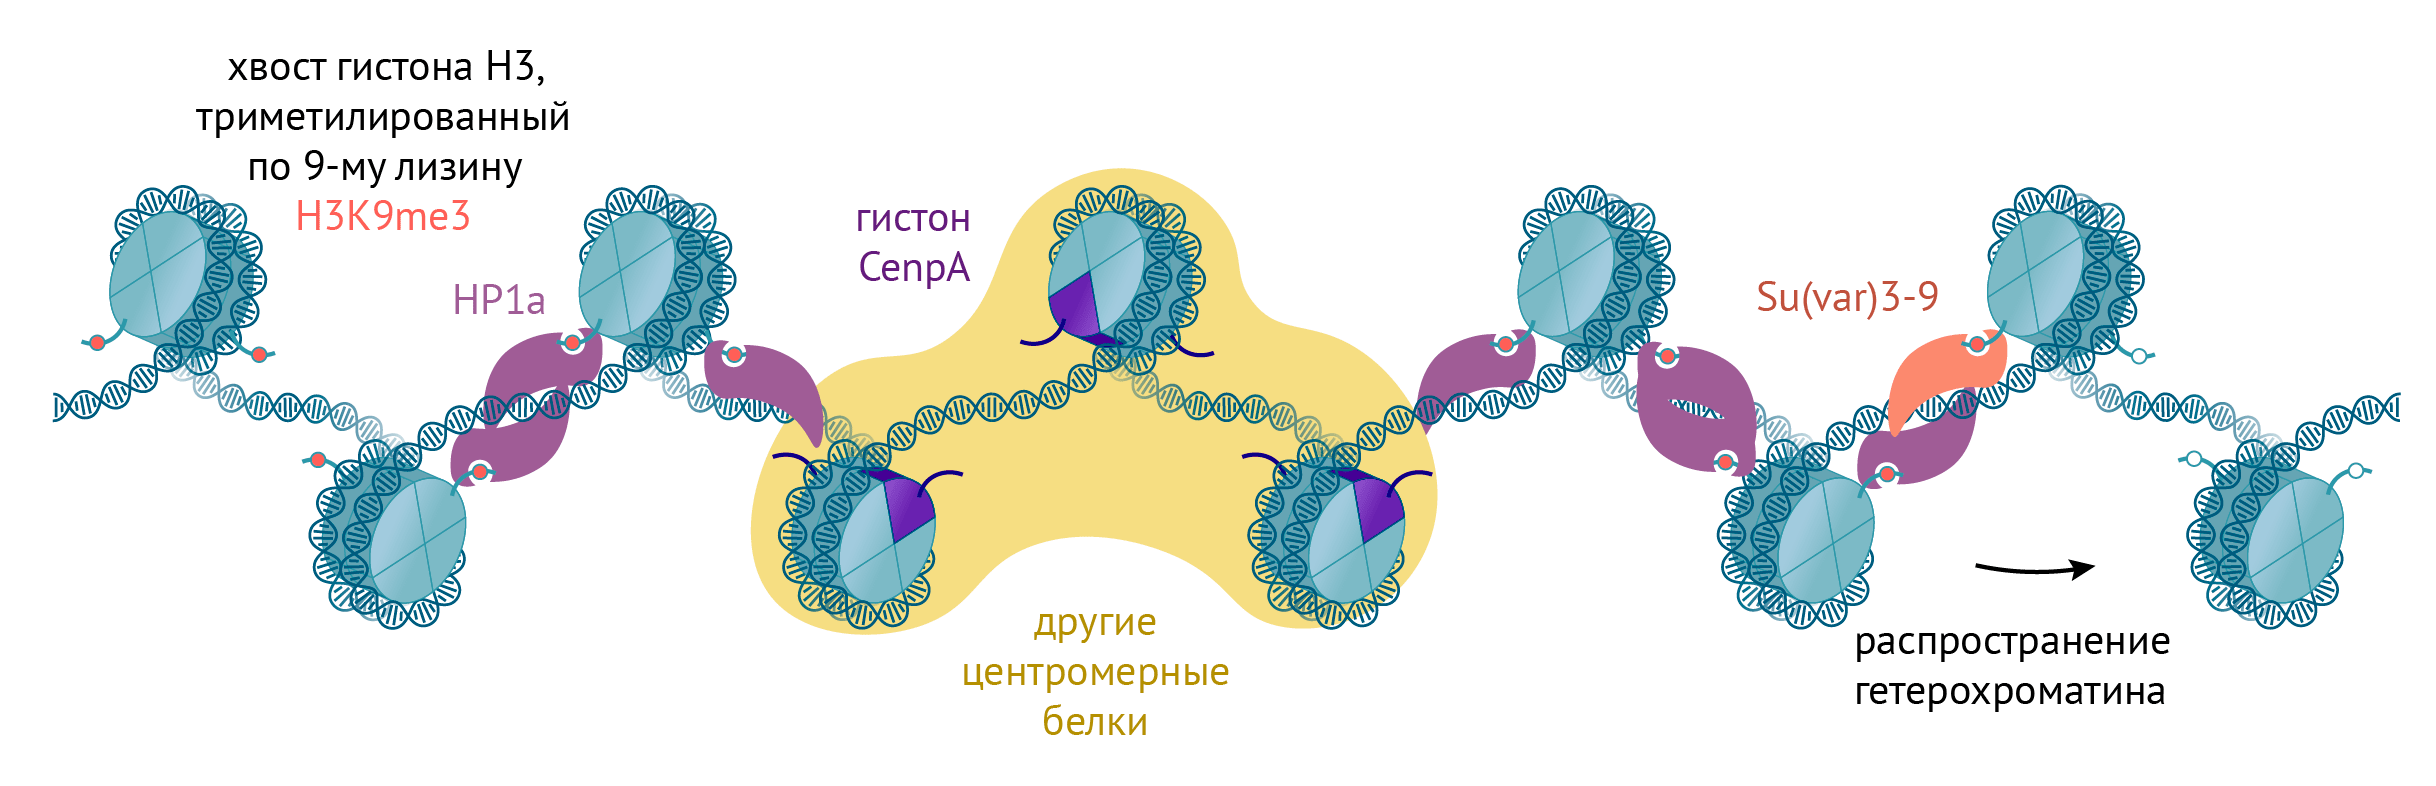 Центромера и перицентромерный хроматин